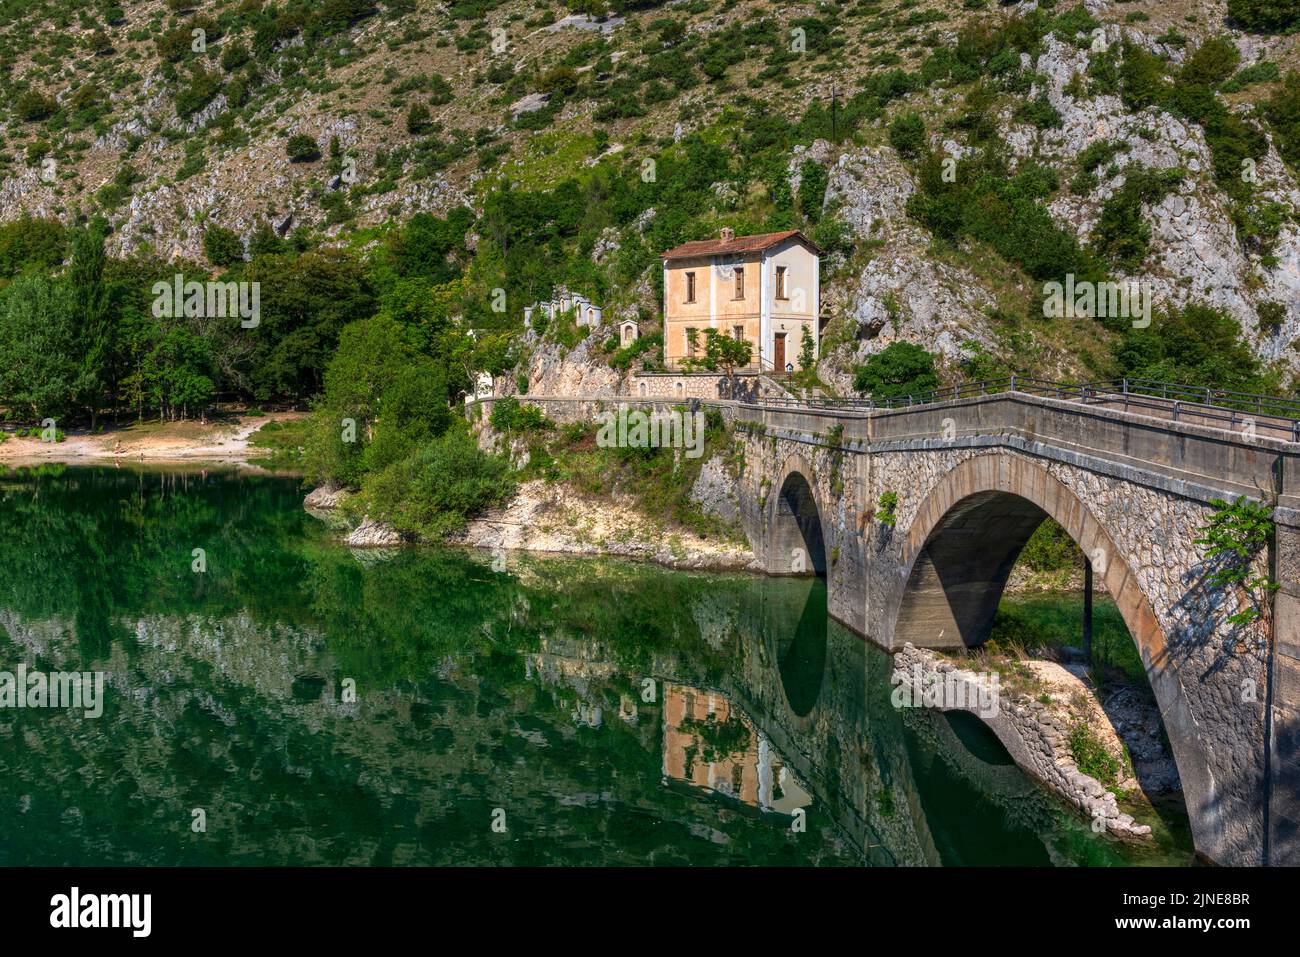 Villalago, Aquila, Abruzzo, Italy Stock Photo